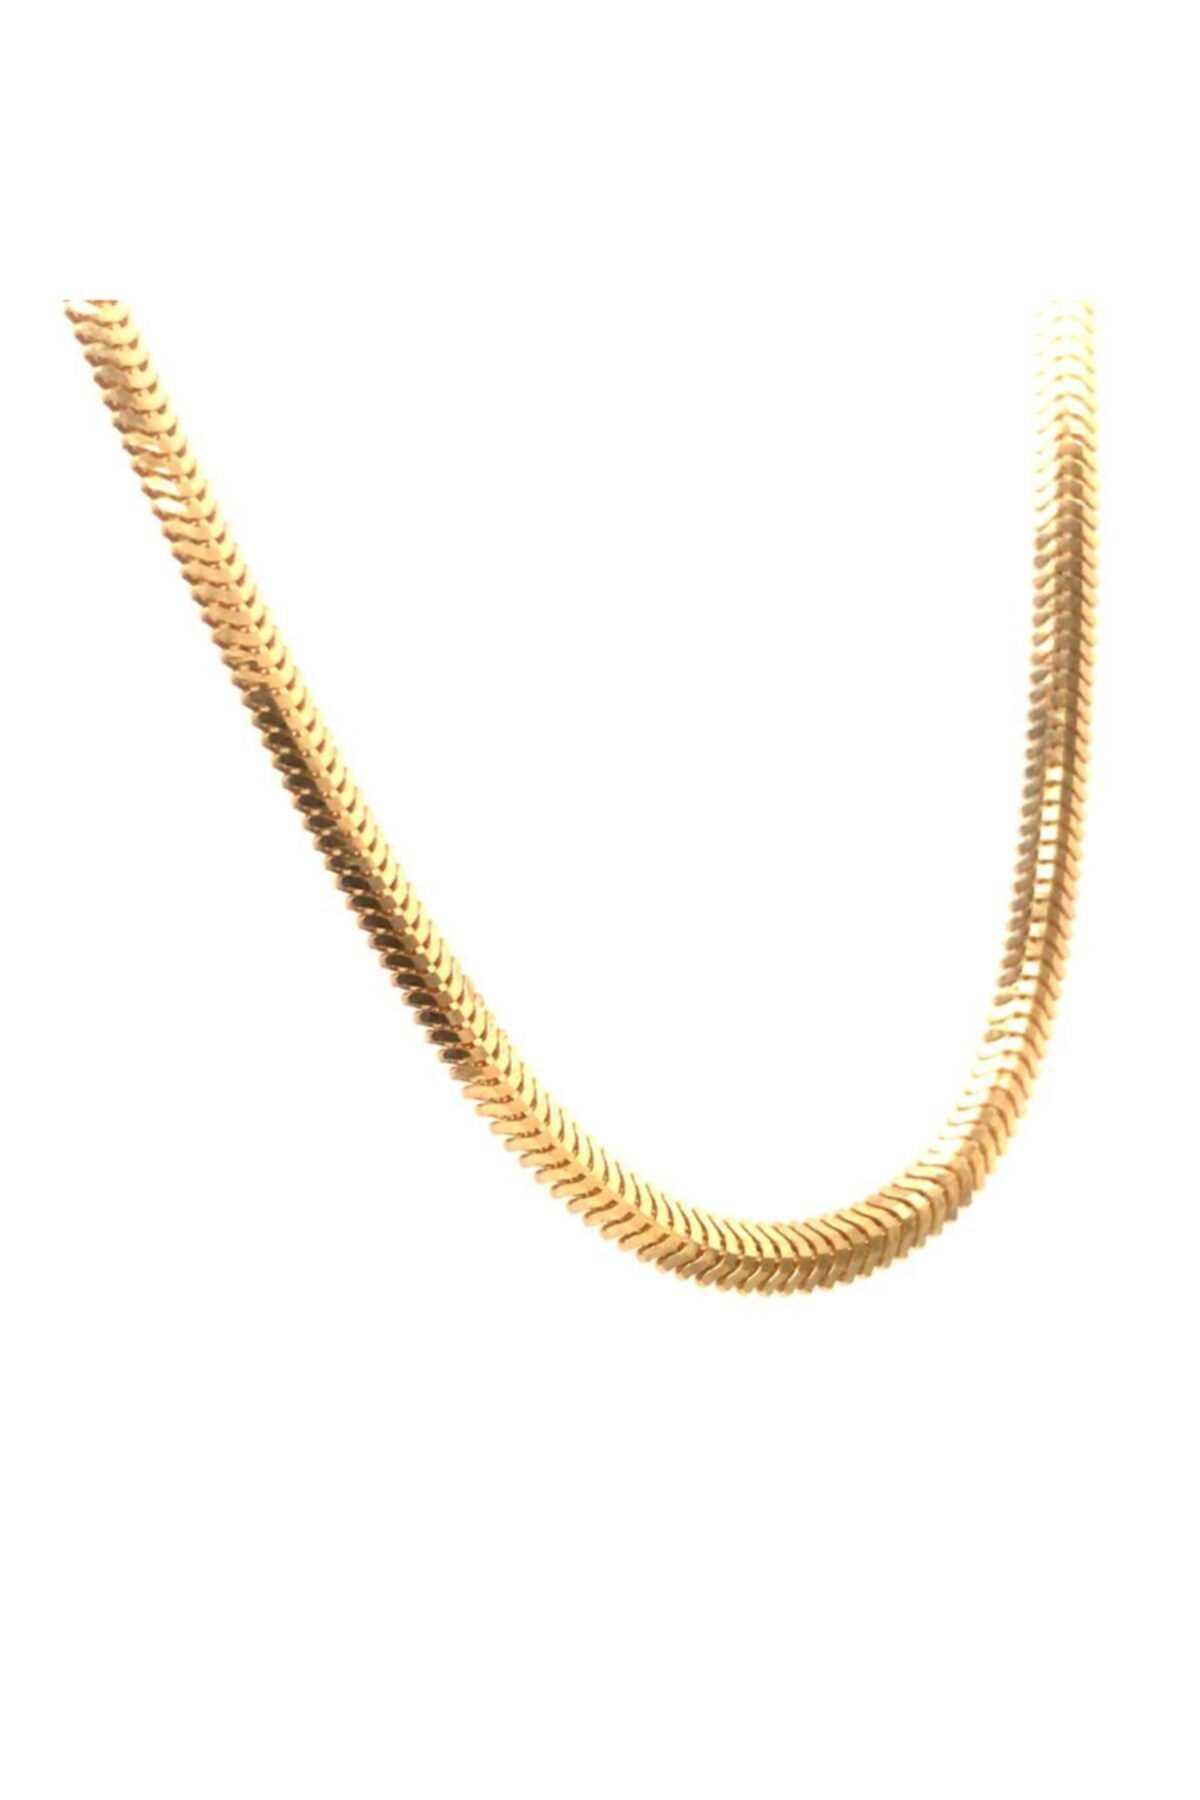 خرید انلاین گردنبند طلا زنانه ترکیه شیک BERK MÜCEVHERAT رنگ زرد ty105581540